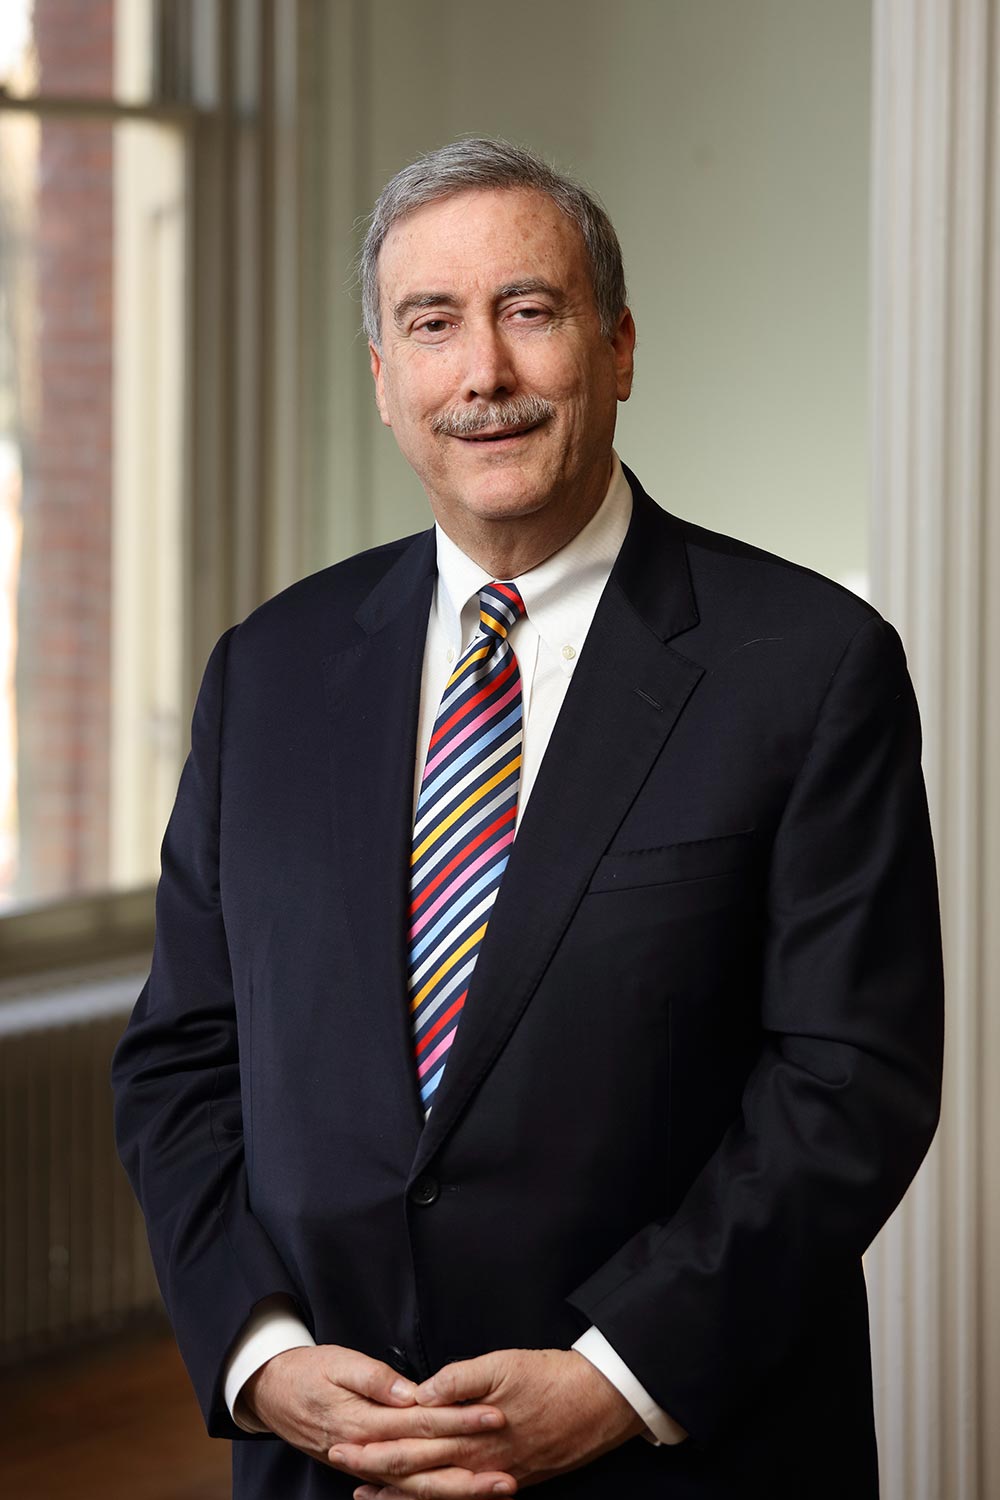 Dr. Larry J. Sabato